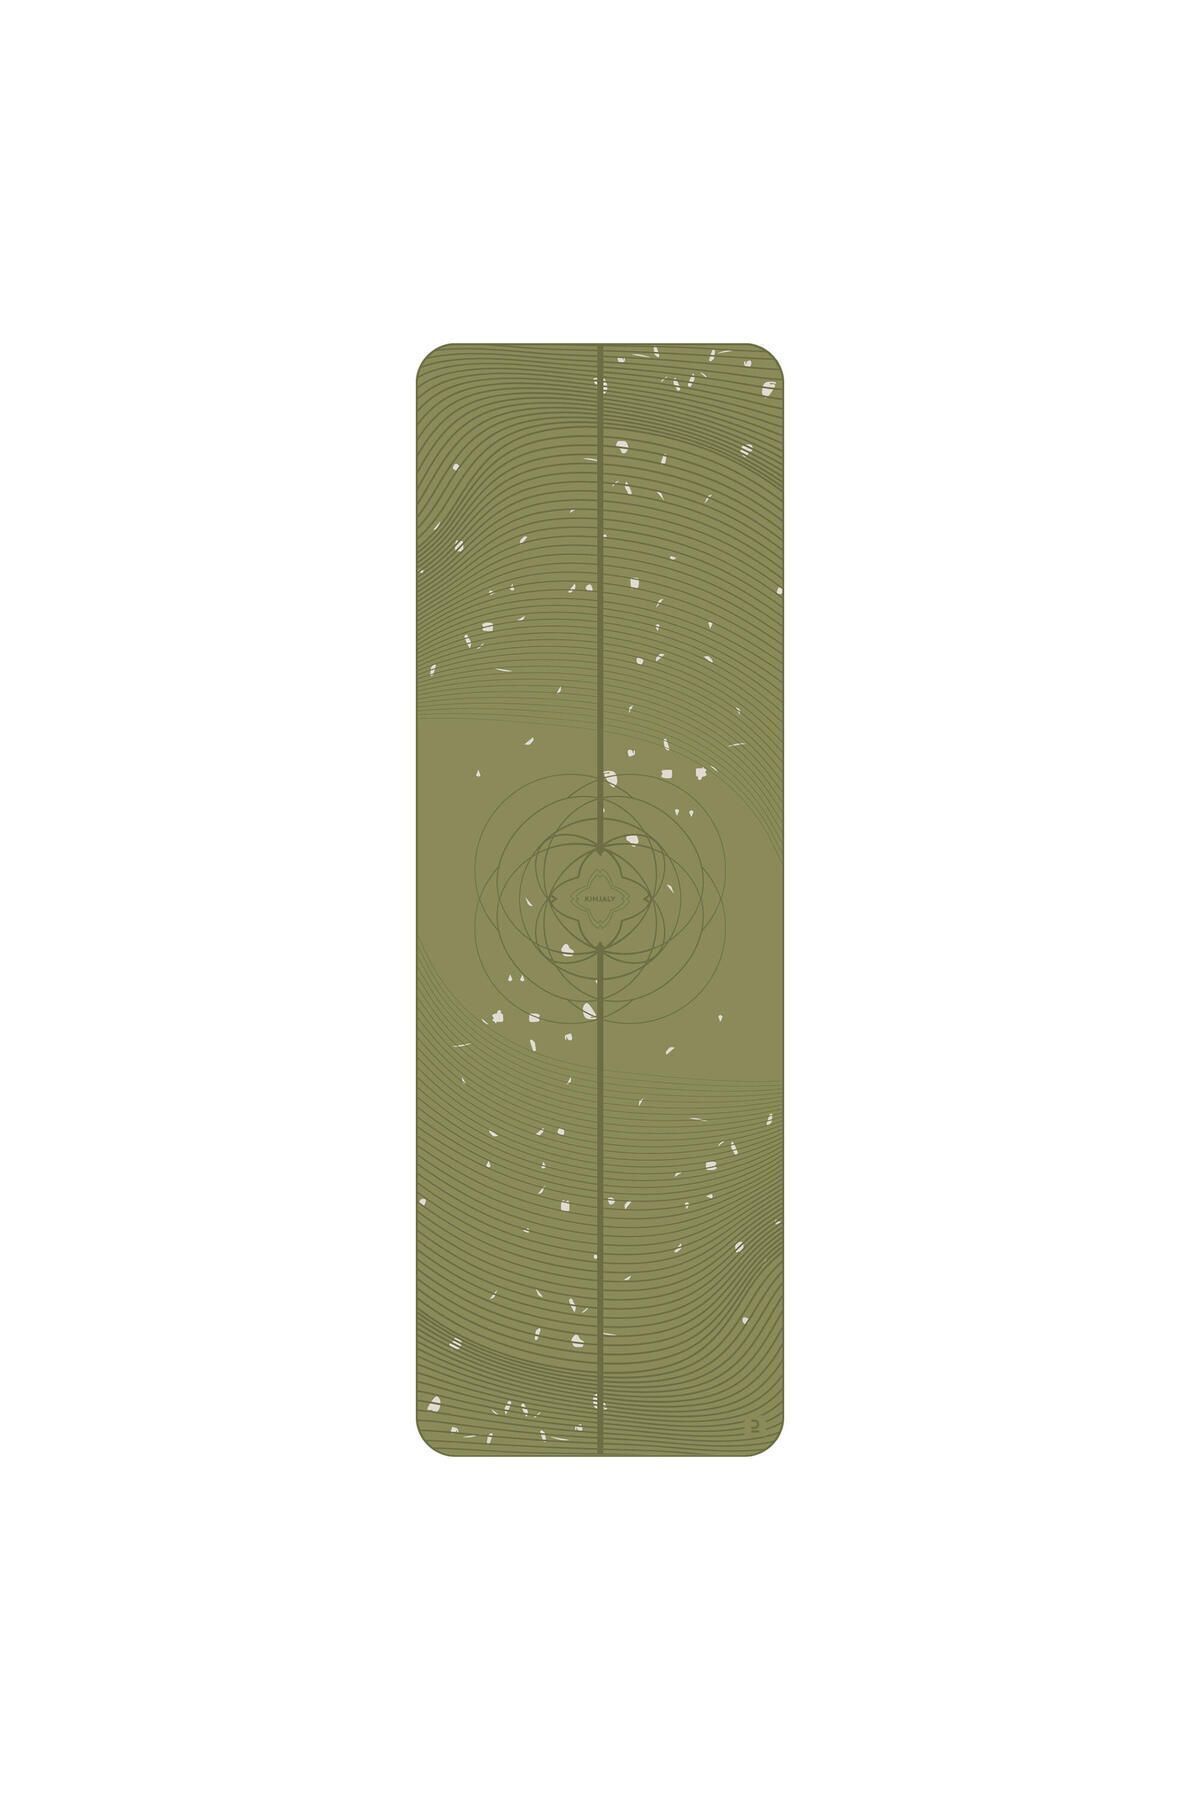 Decathlon Hafif Yoga Matı - 185 × 61 cm × 5 mm - Yeşil